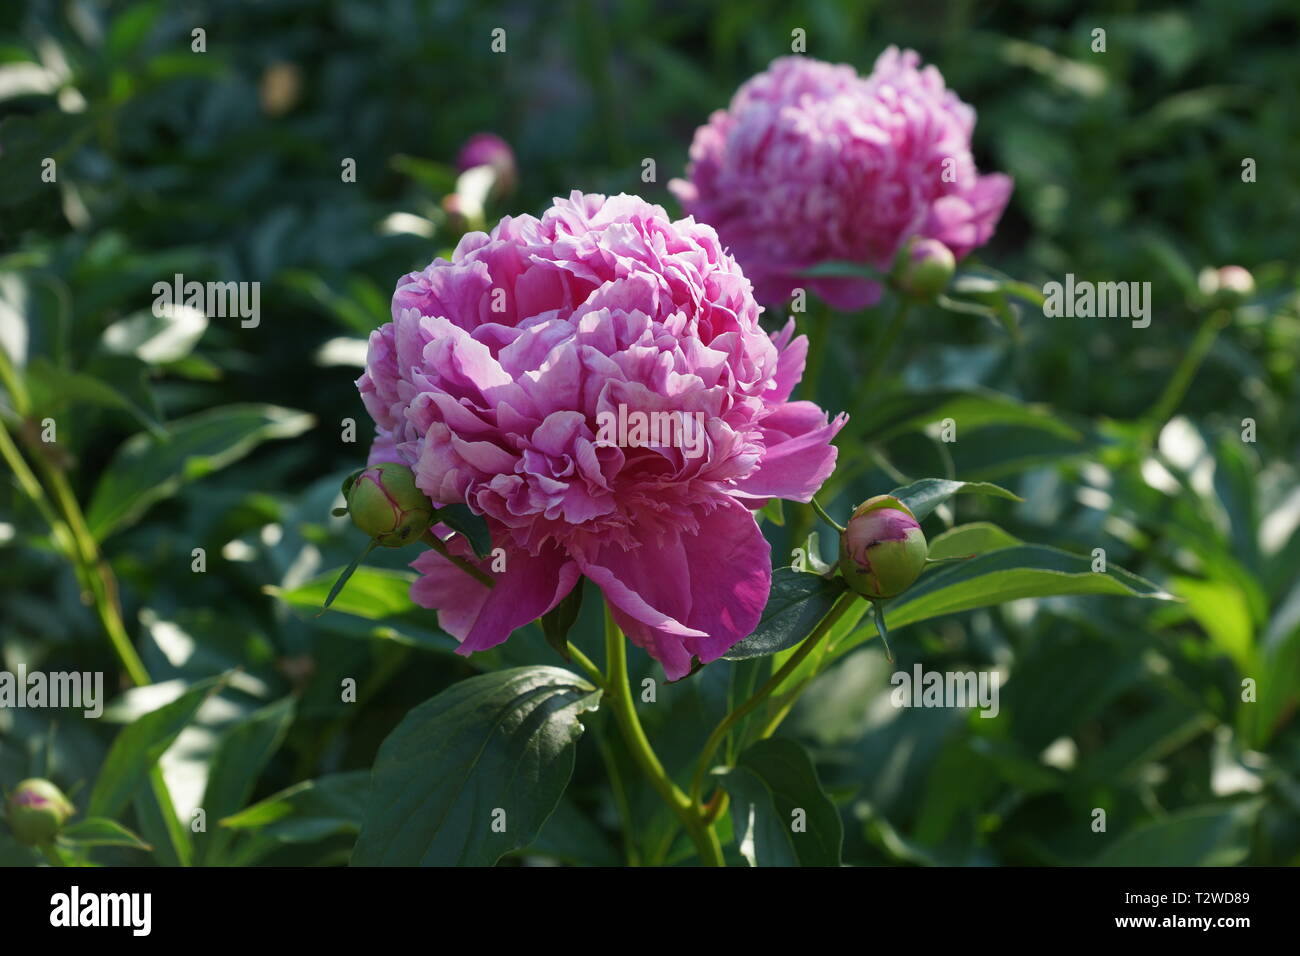 Paeonia lactiflora Monsieur Jules Elie. Doble rosa peonía. Paeonia lactiflora (Chino o peonía peonía jardín común). Foto de stock